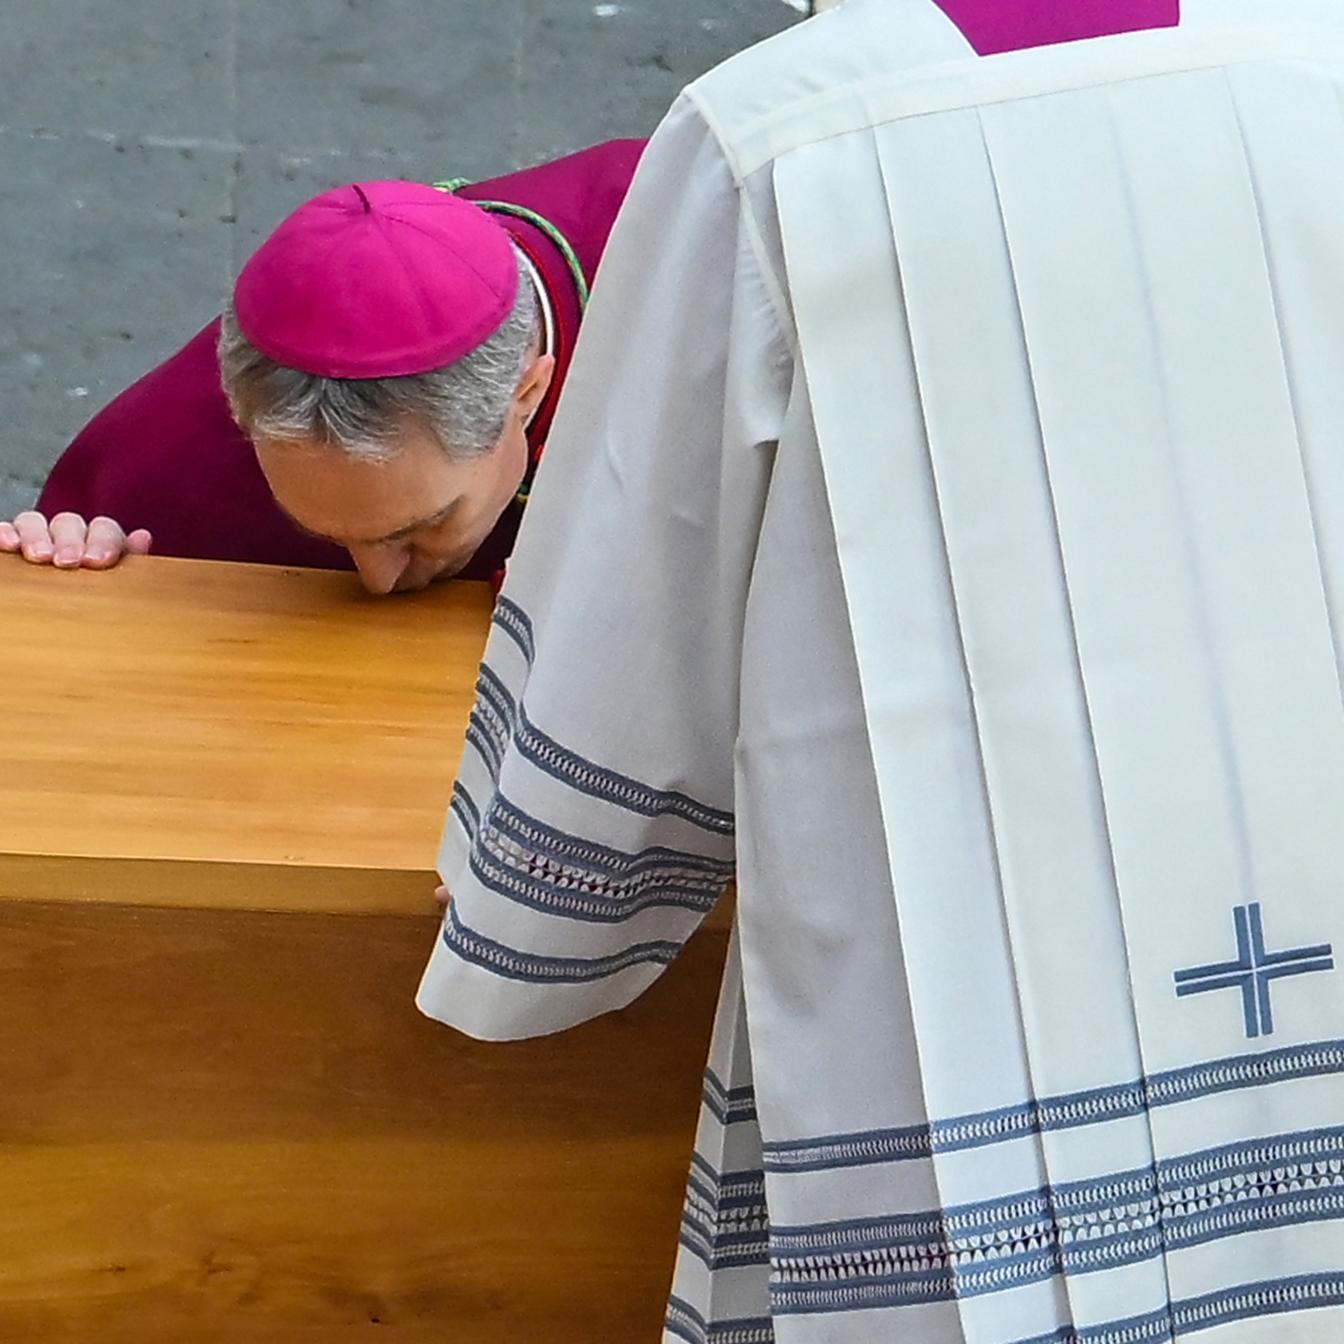 Georg Gänswein küsst den Sarg des verstorbenen Papstes